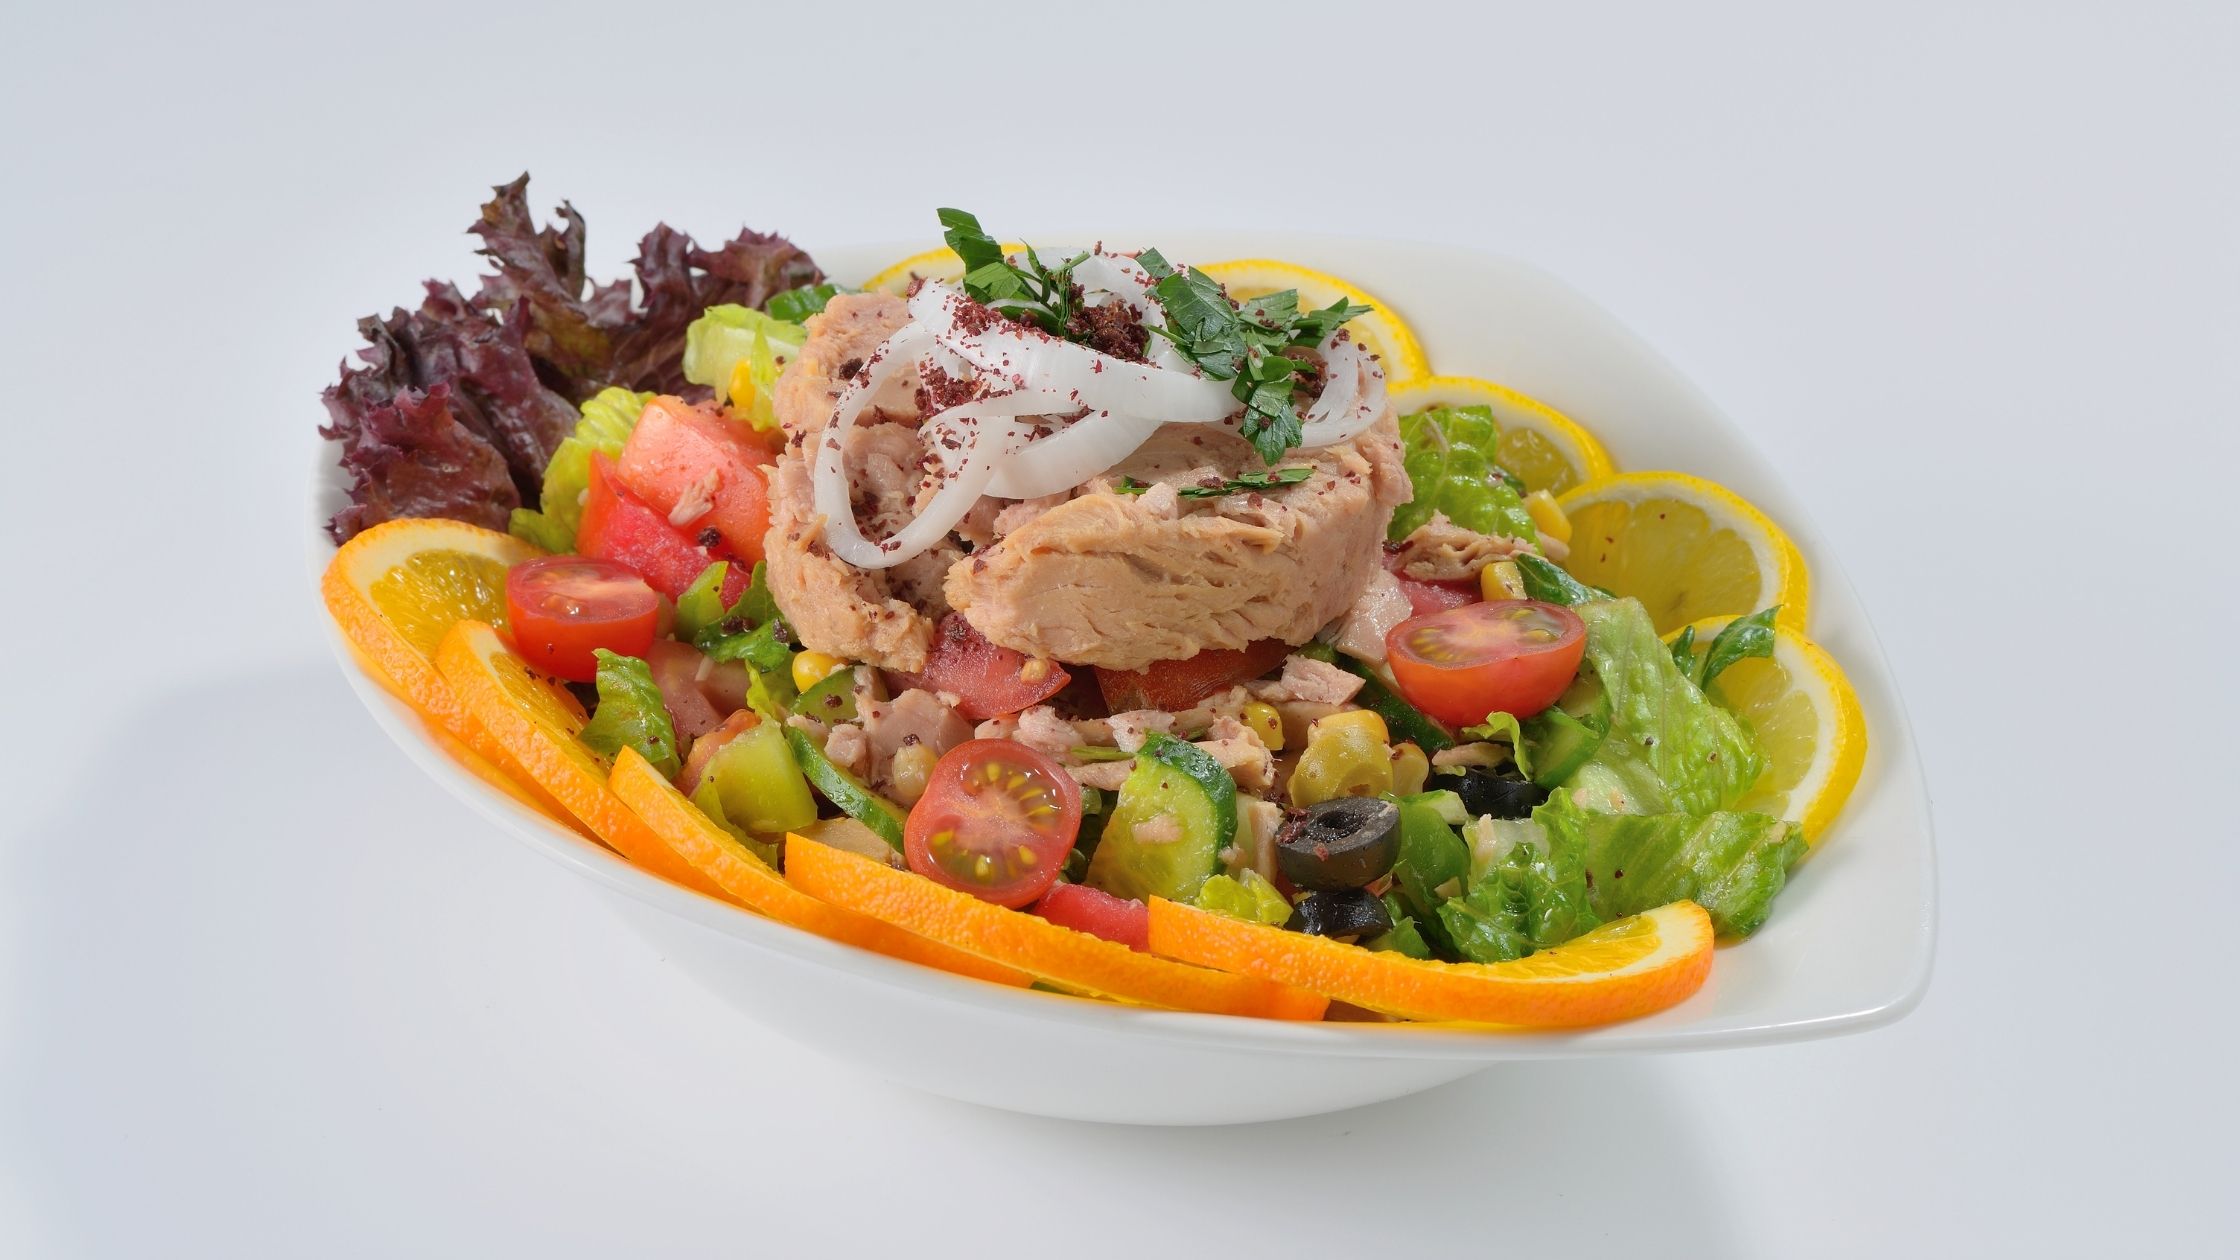 ton balıklı renkli salata